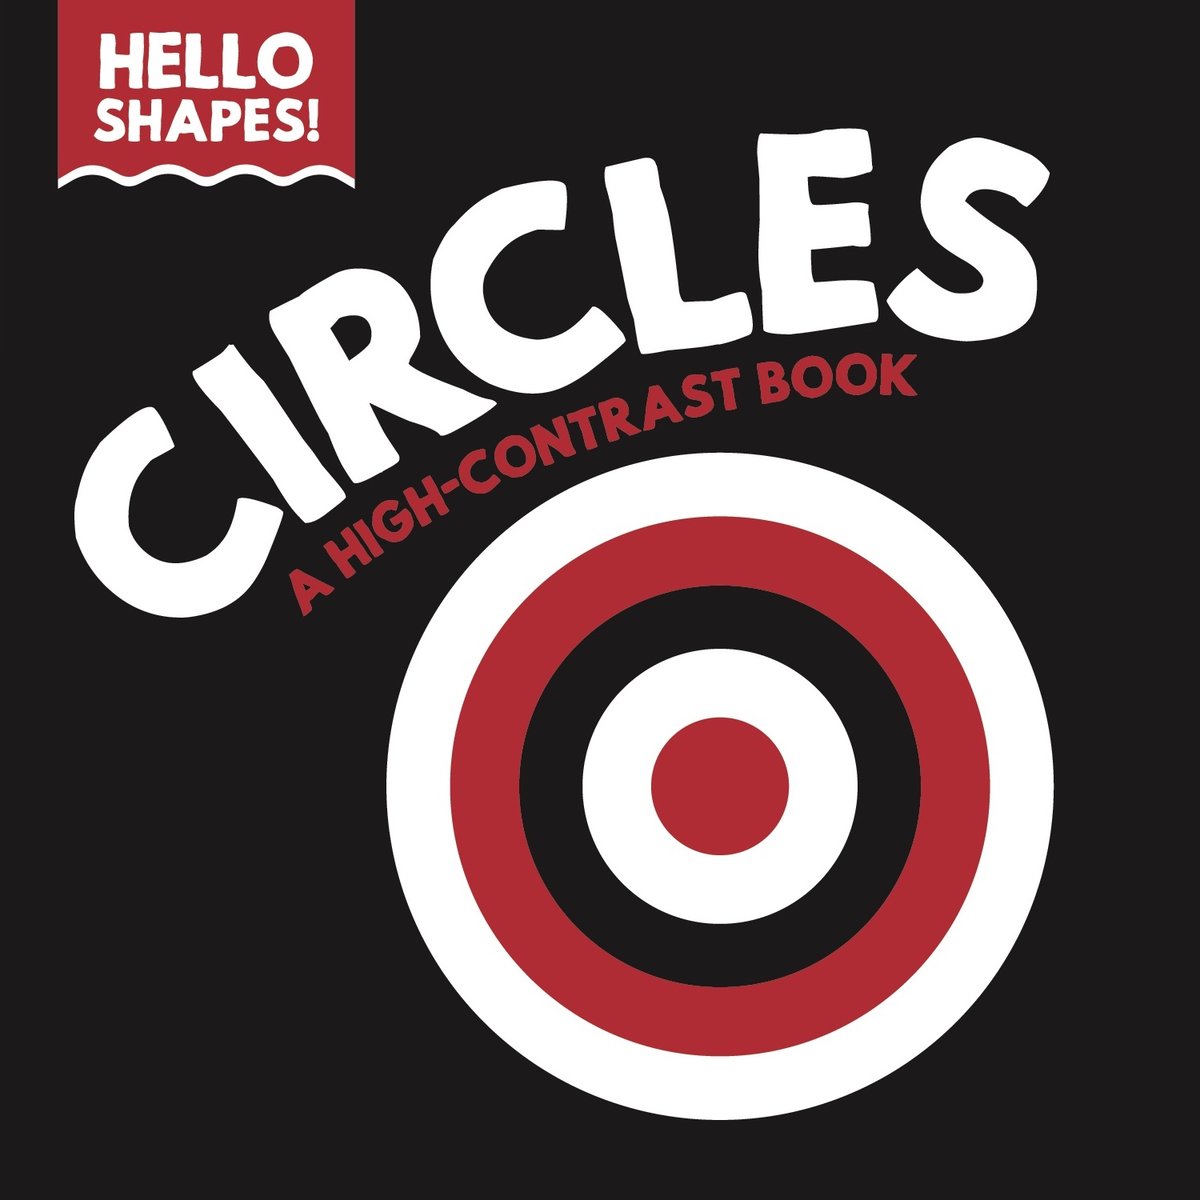 Hello Shapes-Circles